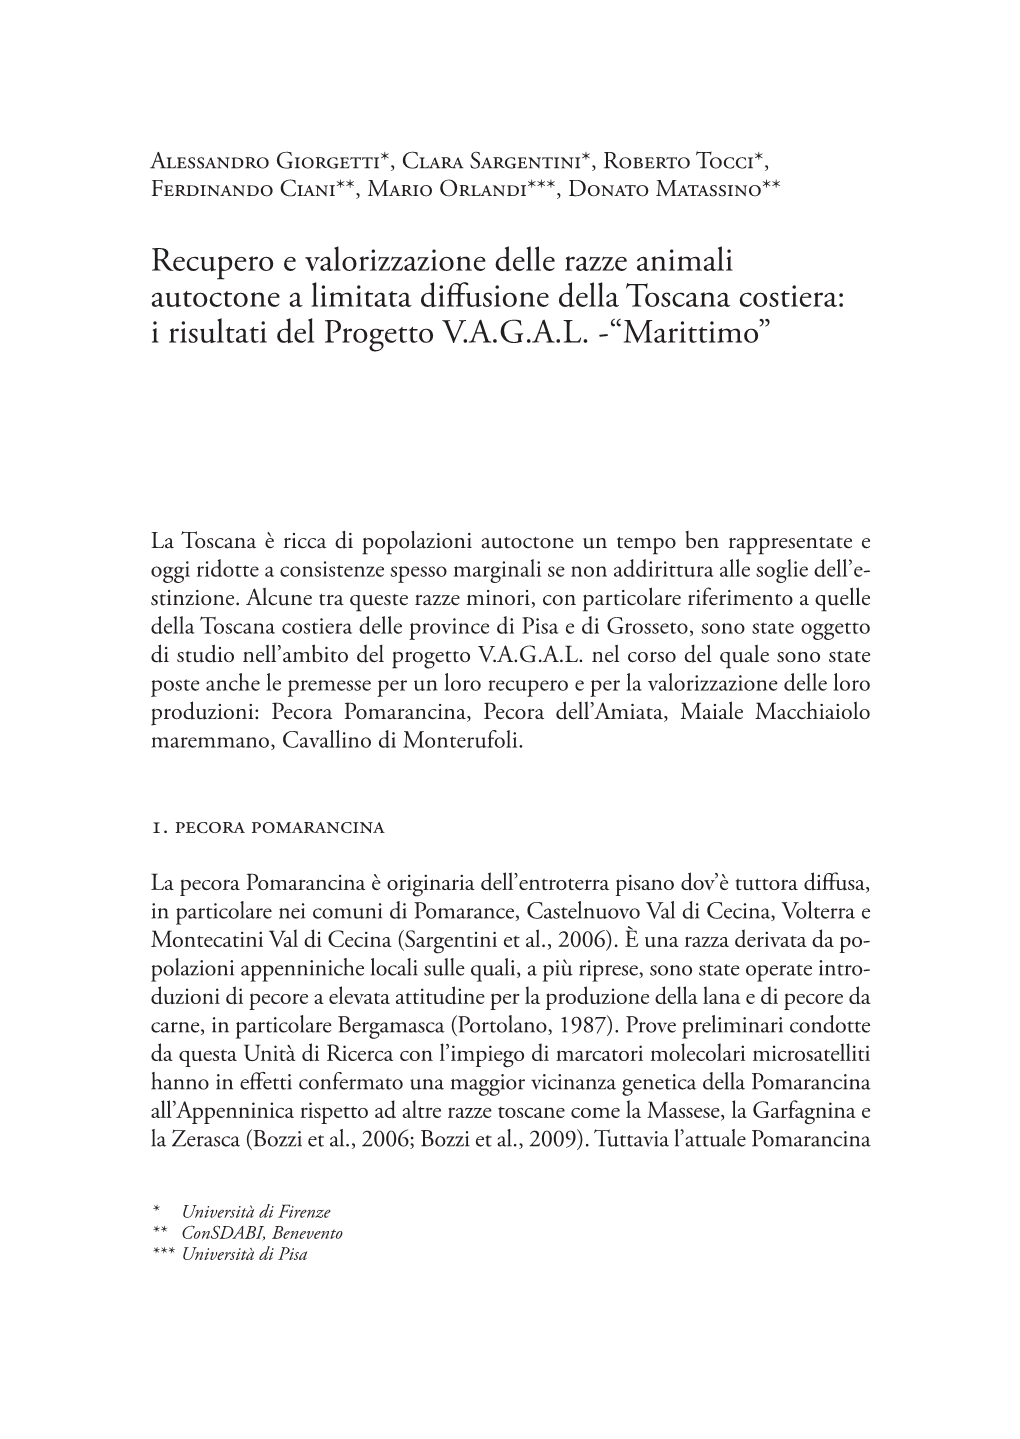 Recupero E Valorizzazione Delle Razze Animali Autoctone a Limitata Diffusione Della Toscana Costiera: I Risultati Del Progetto V.A.G.A.L